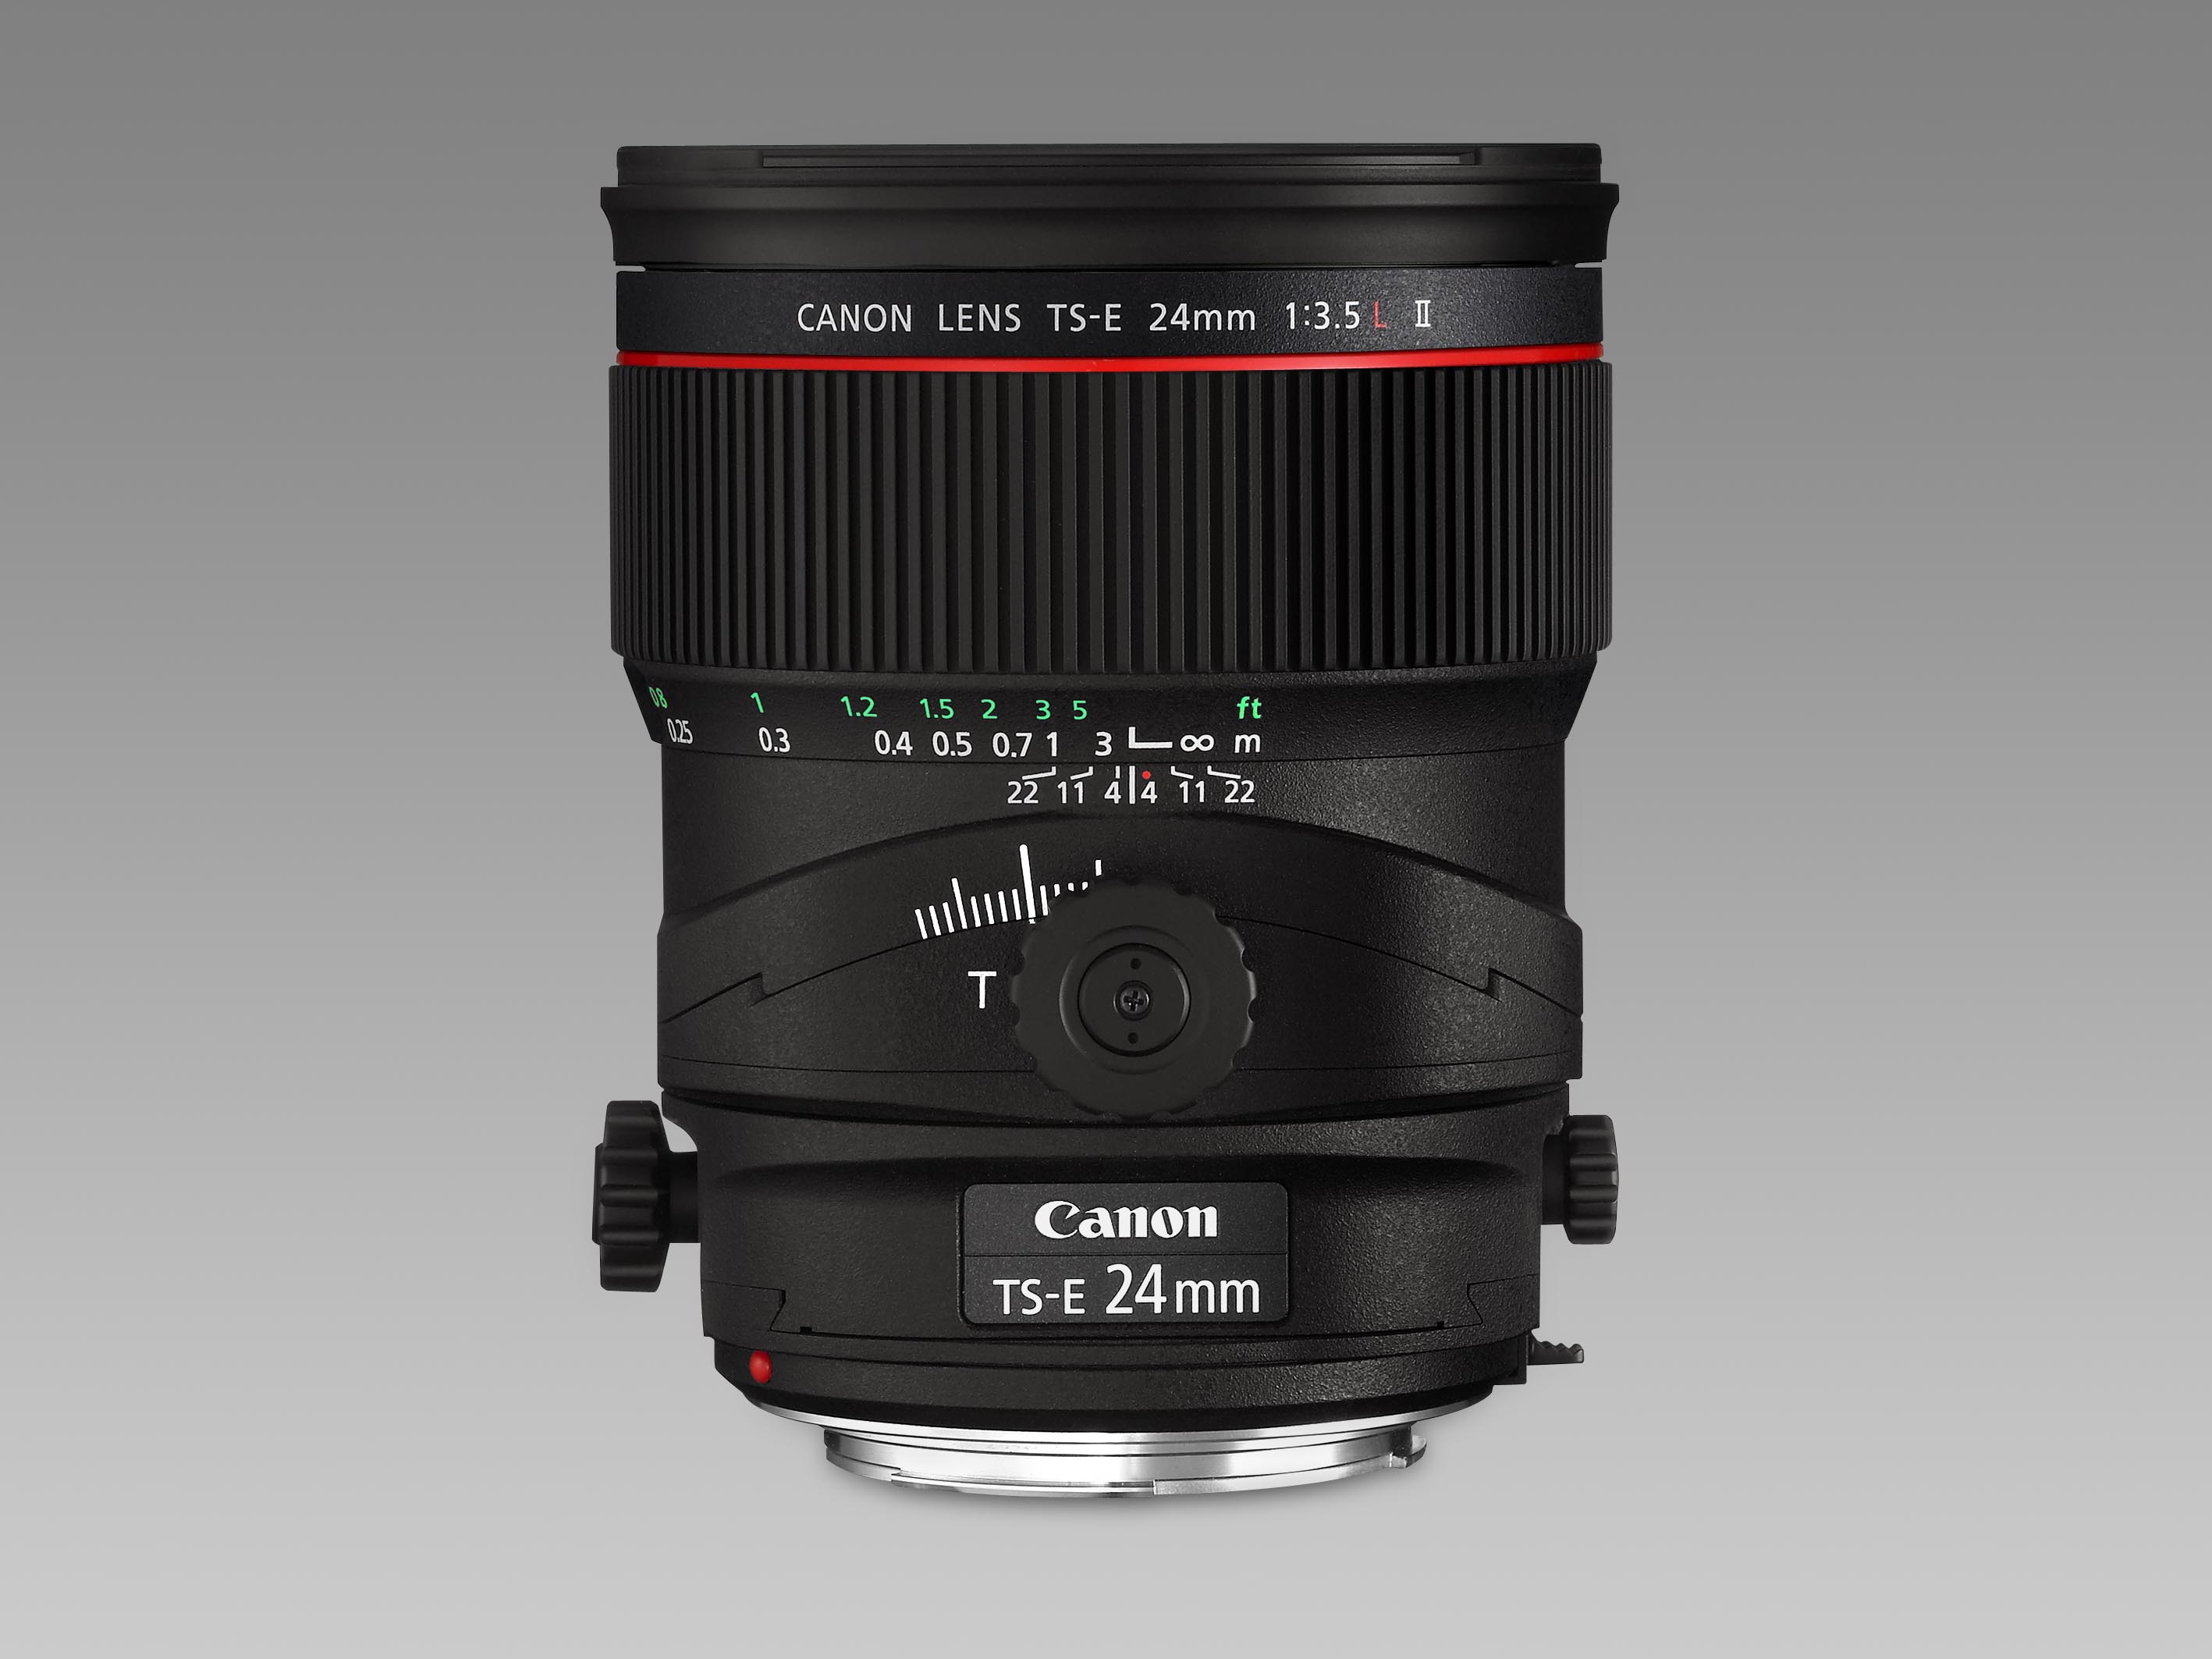 Canon TS-E 24mm F3.5 L II Tilt/Shift